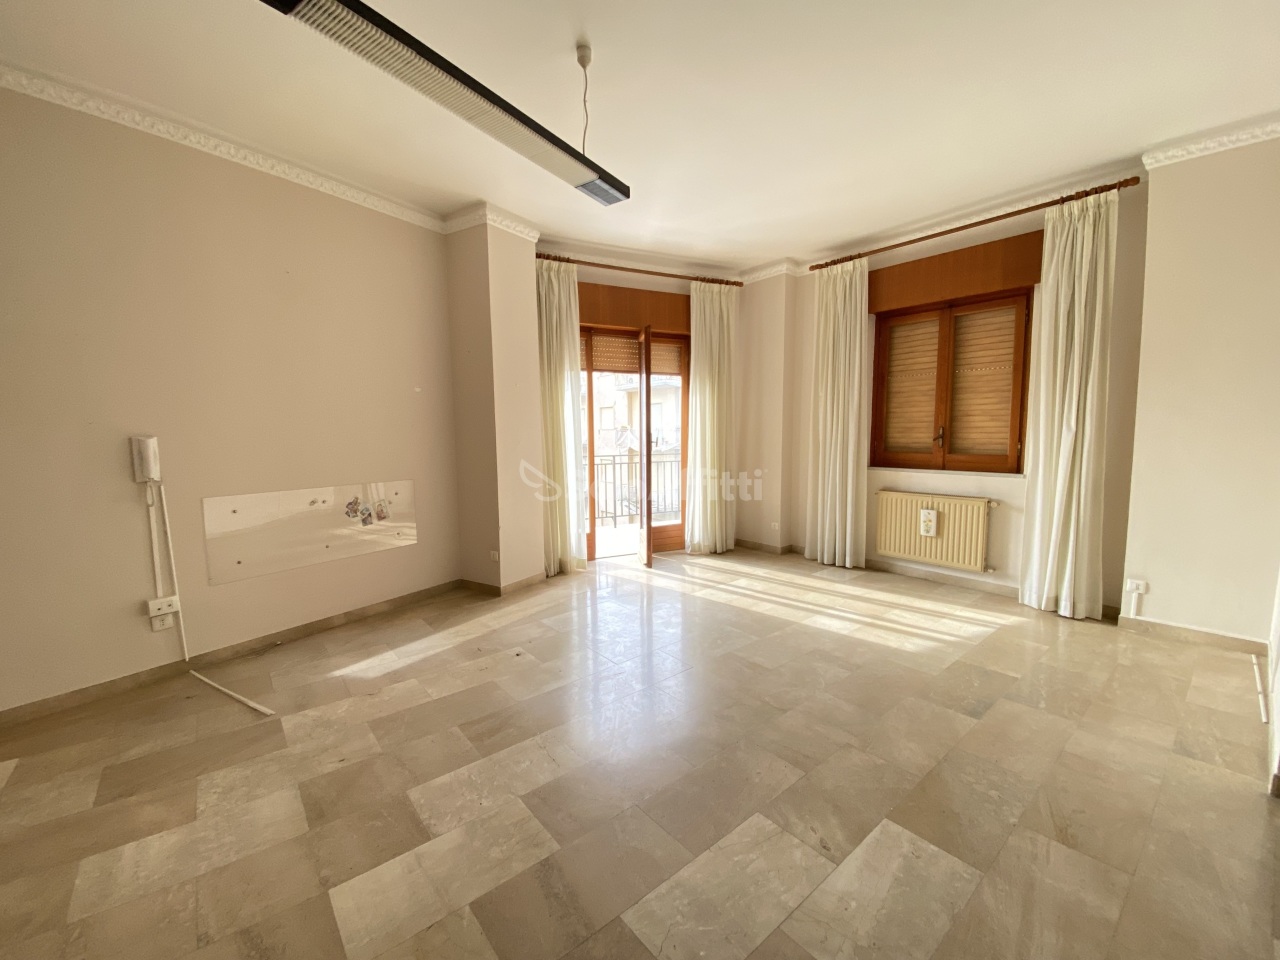 Appartamento in affitto a Sciacca, 5 locali, prezzo € 420 | PortaleAgenzieImmobiliari.it